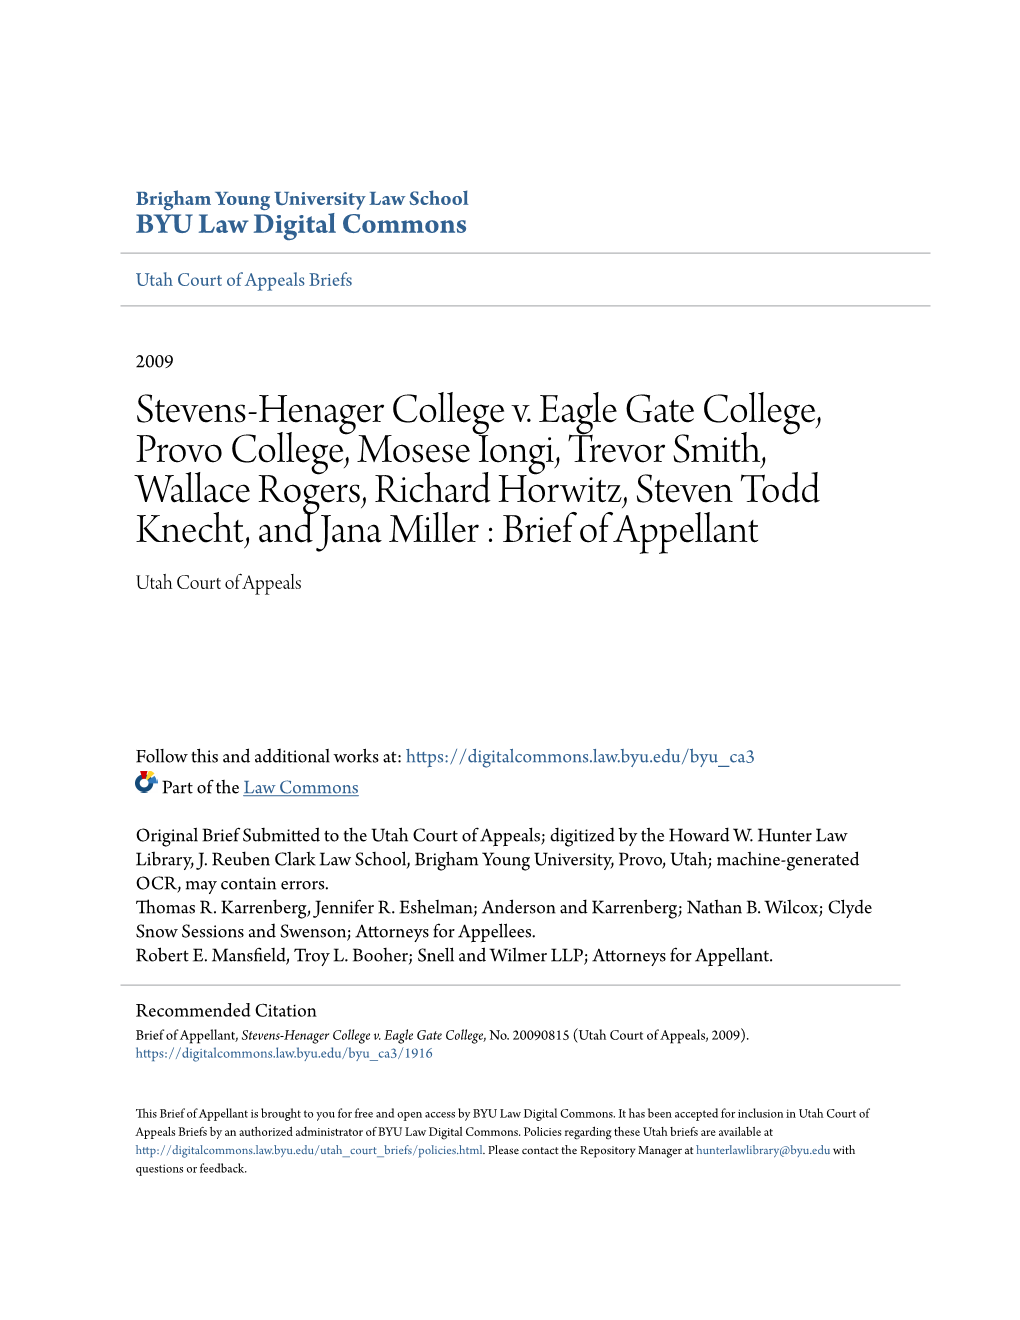 Stevens-Henager College V. Eagle Gate